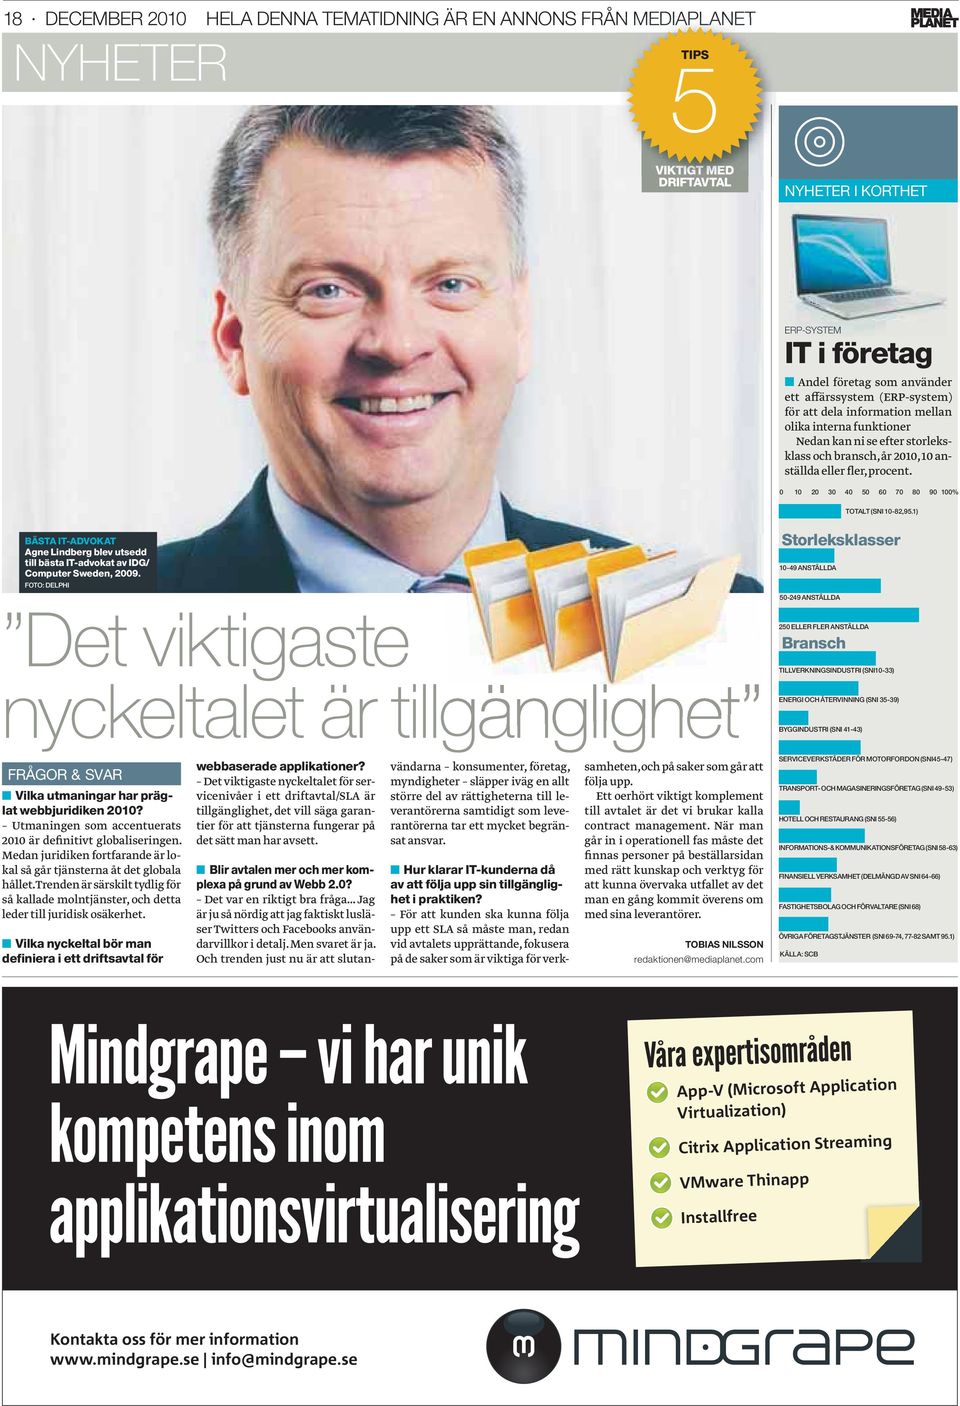 0 10 20 30 40 50 60 70 80 90 100% TOTALT (SNI 10-82,95.1) BÄSTA IT-ADVOKAT Agne Lindberg blev utsedd till bästa IT-advokat av IDG/ Computer Sweden, 2009.